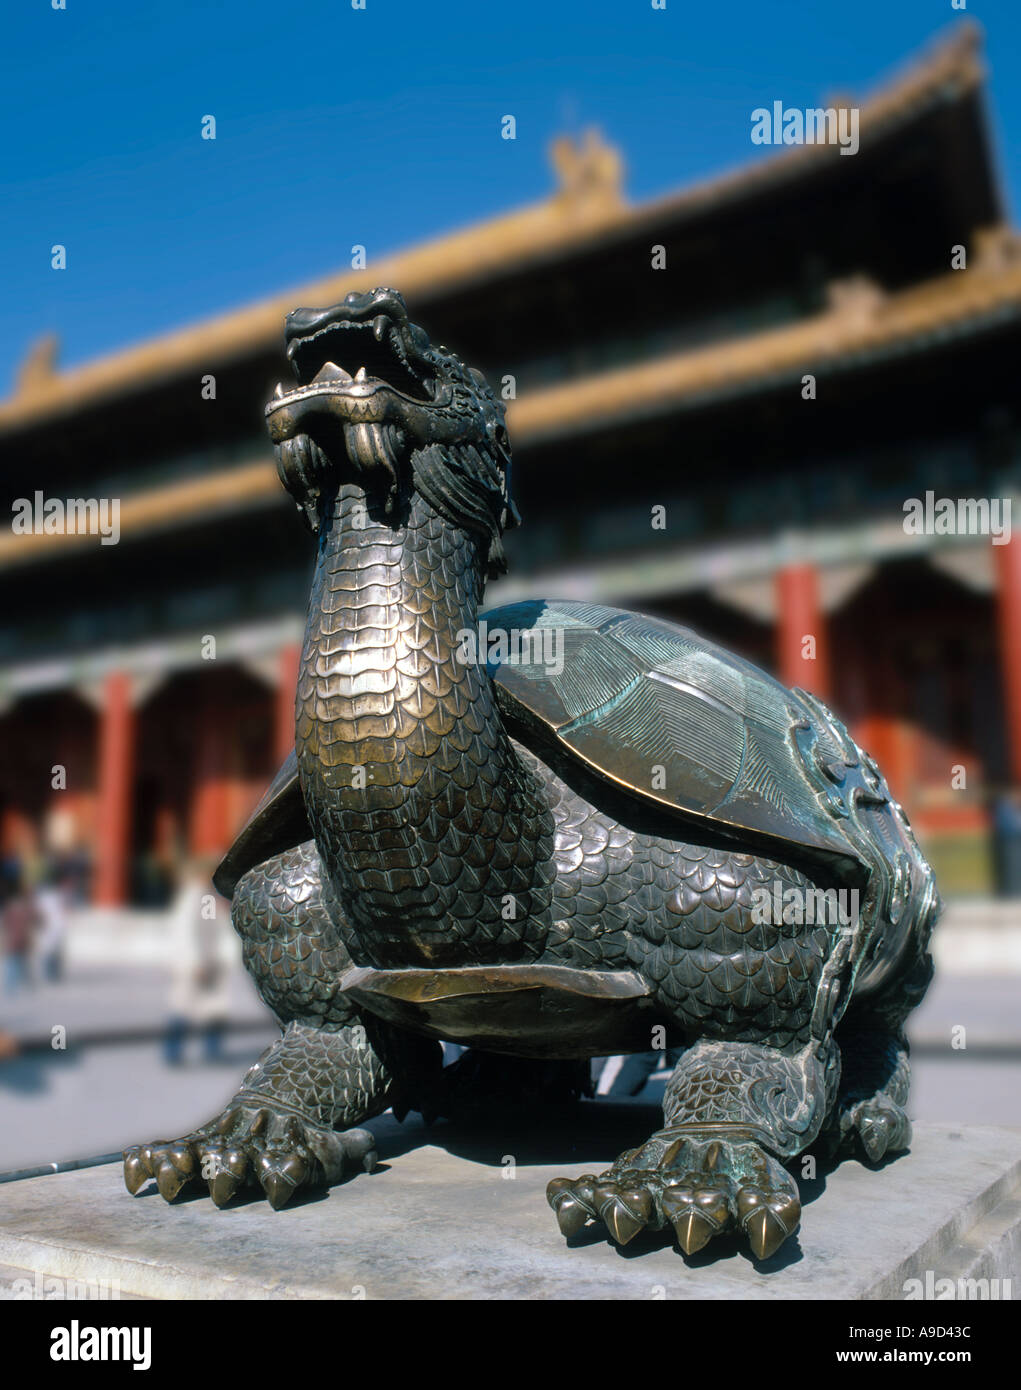 Statue en bronze d'une tortue avec une tête de dragon en face de l'Tai He Dian Hall, Imperial Palace, Forbidden City, Beijing, Chine Banque D'Images